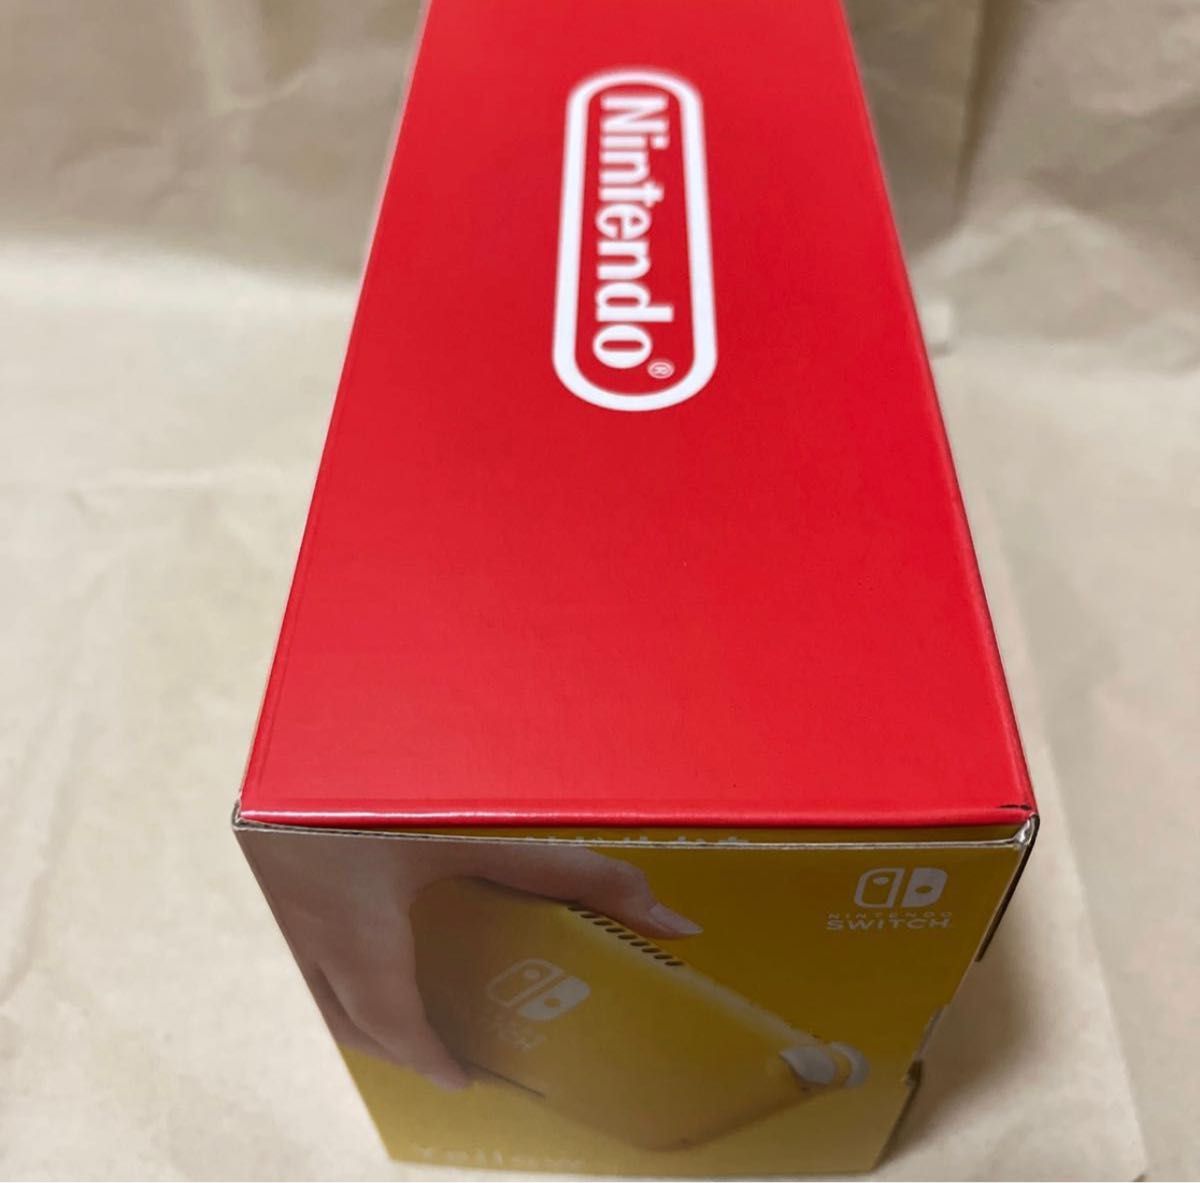 7/16購入品 新品未開封 Nintendo Switch Lite イエロー 店舗印無し 24